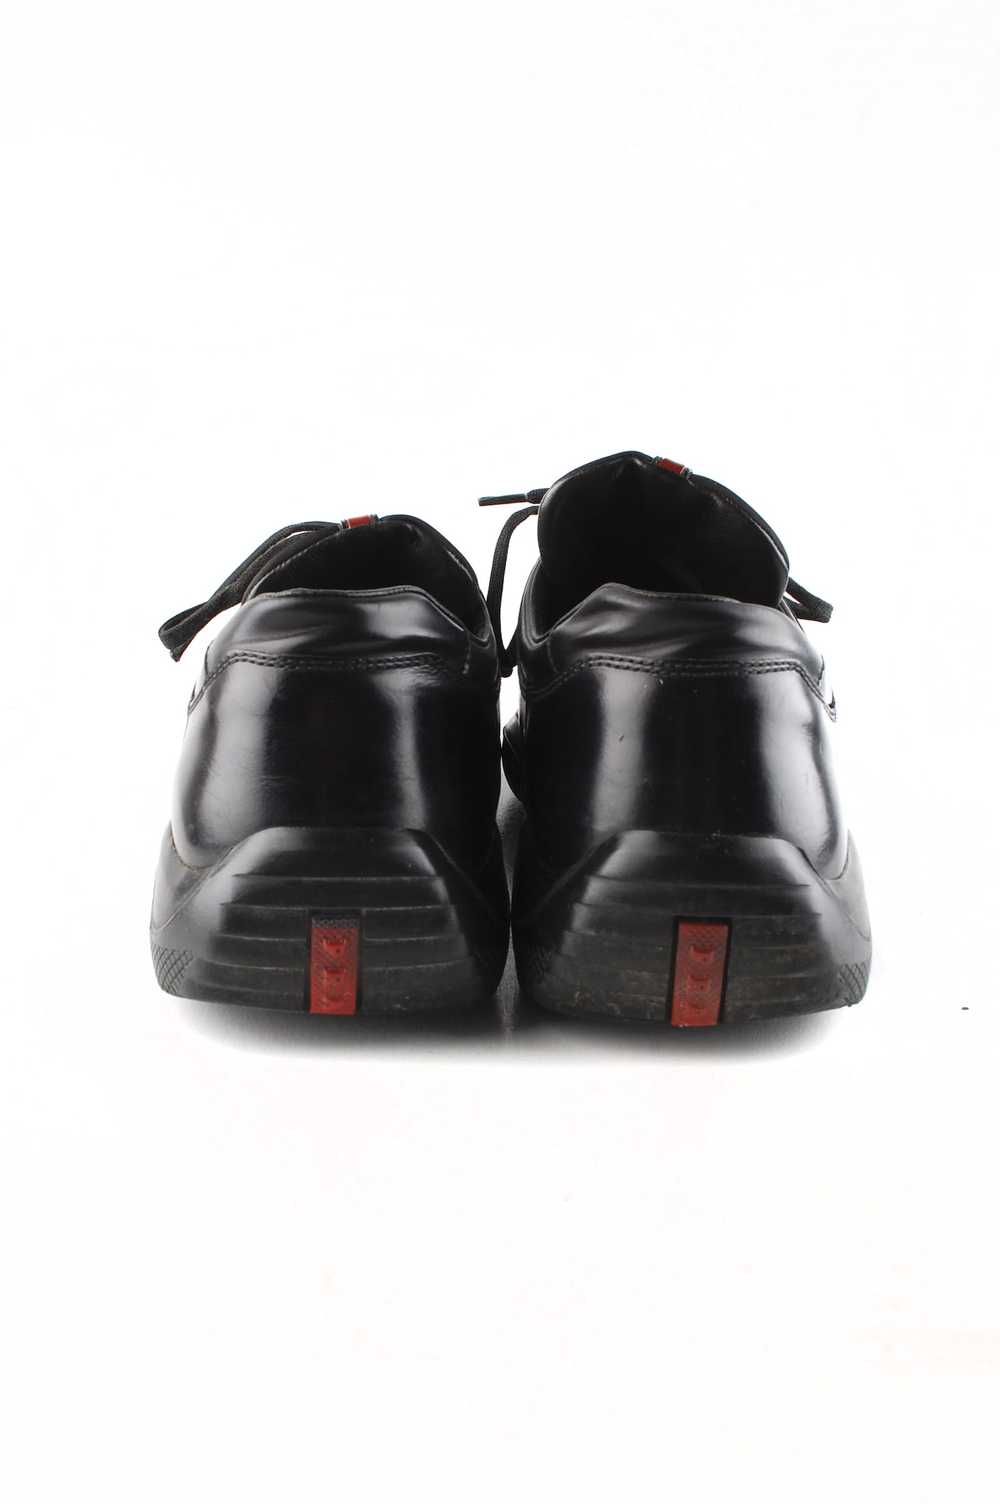 Prada Original Prada Leather Oxford Shoes sz.42EU… - image 5